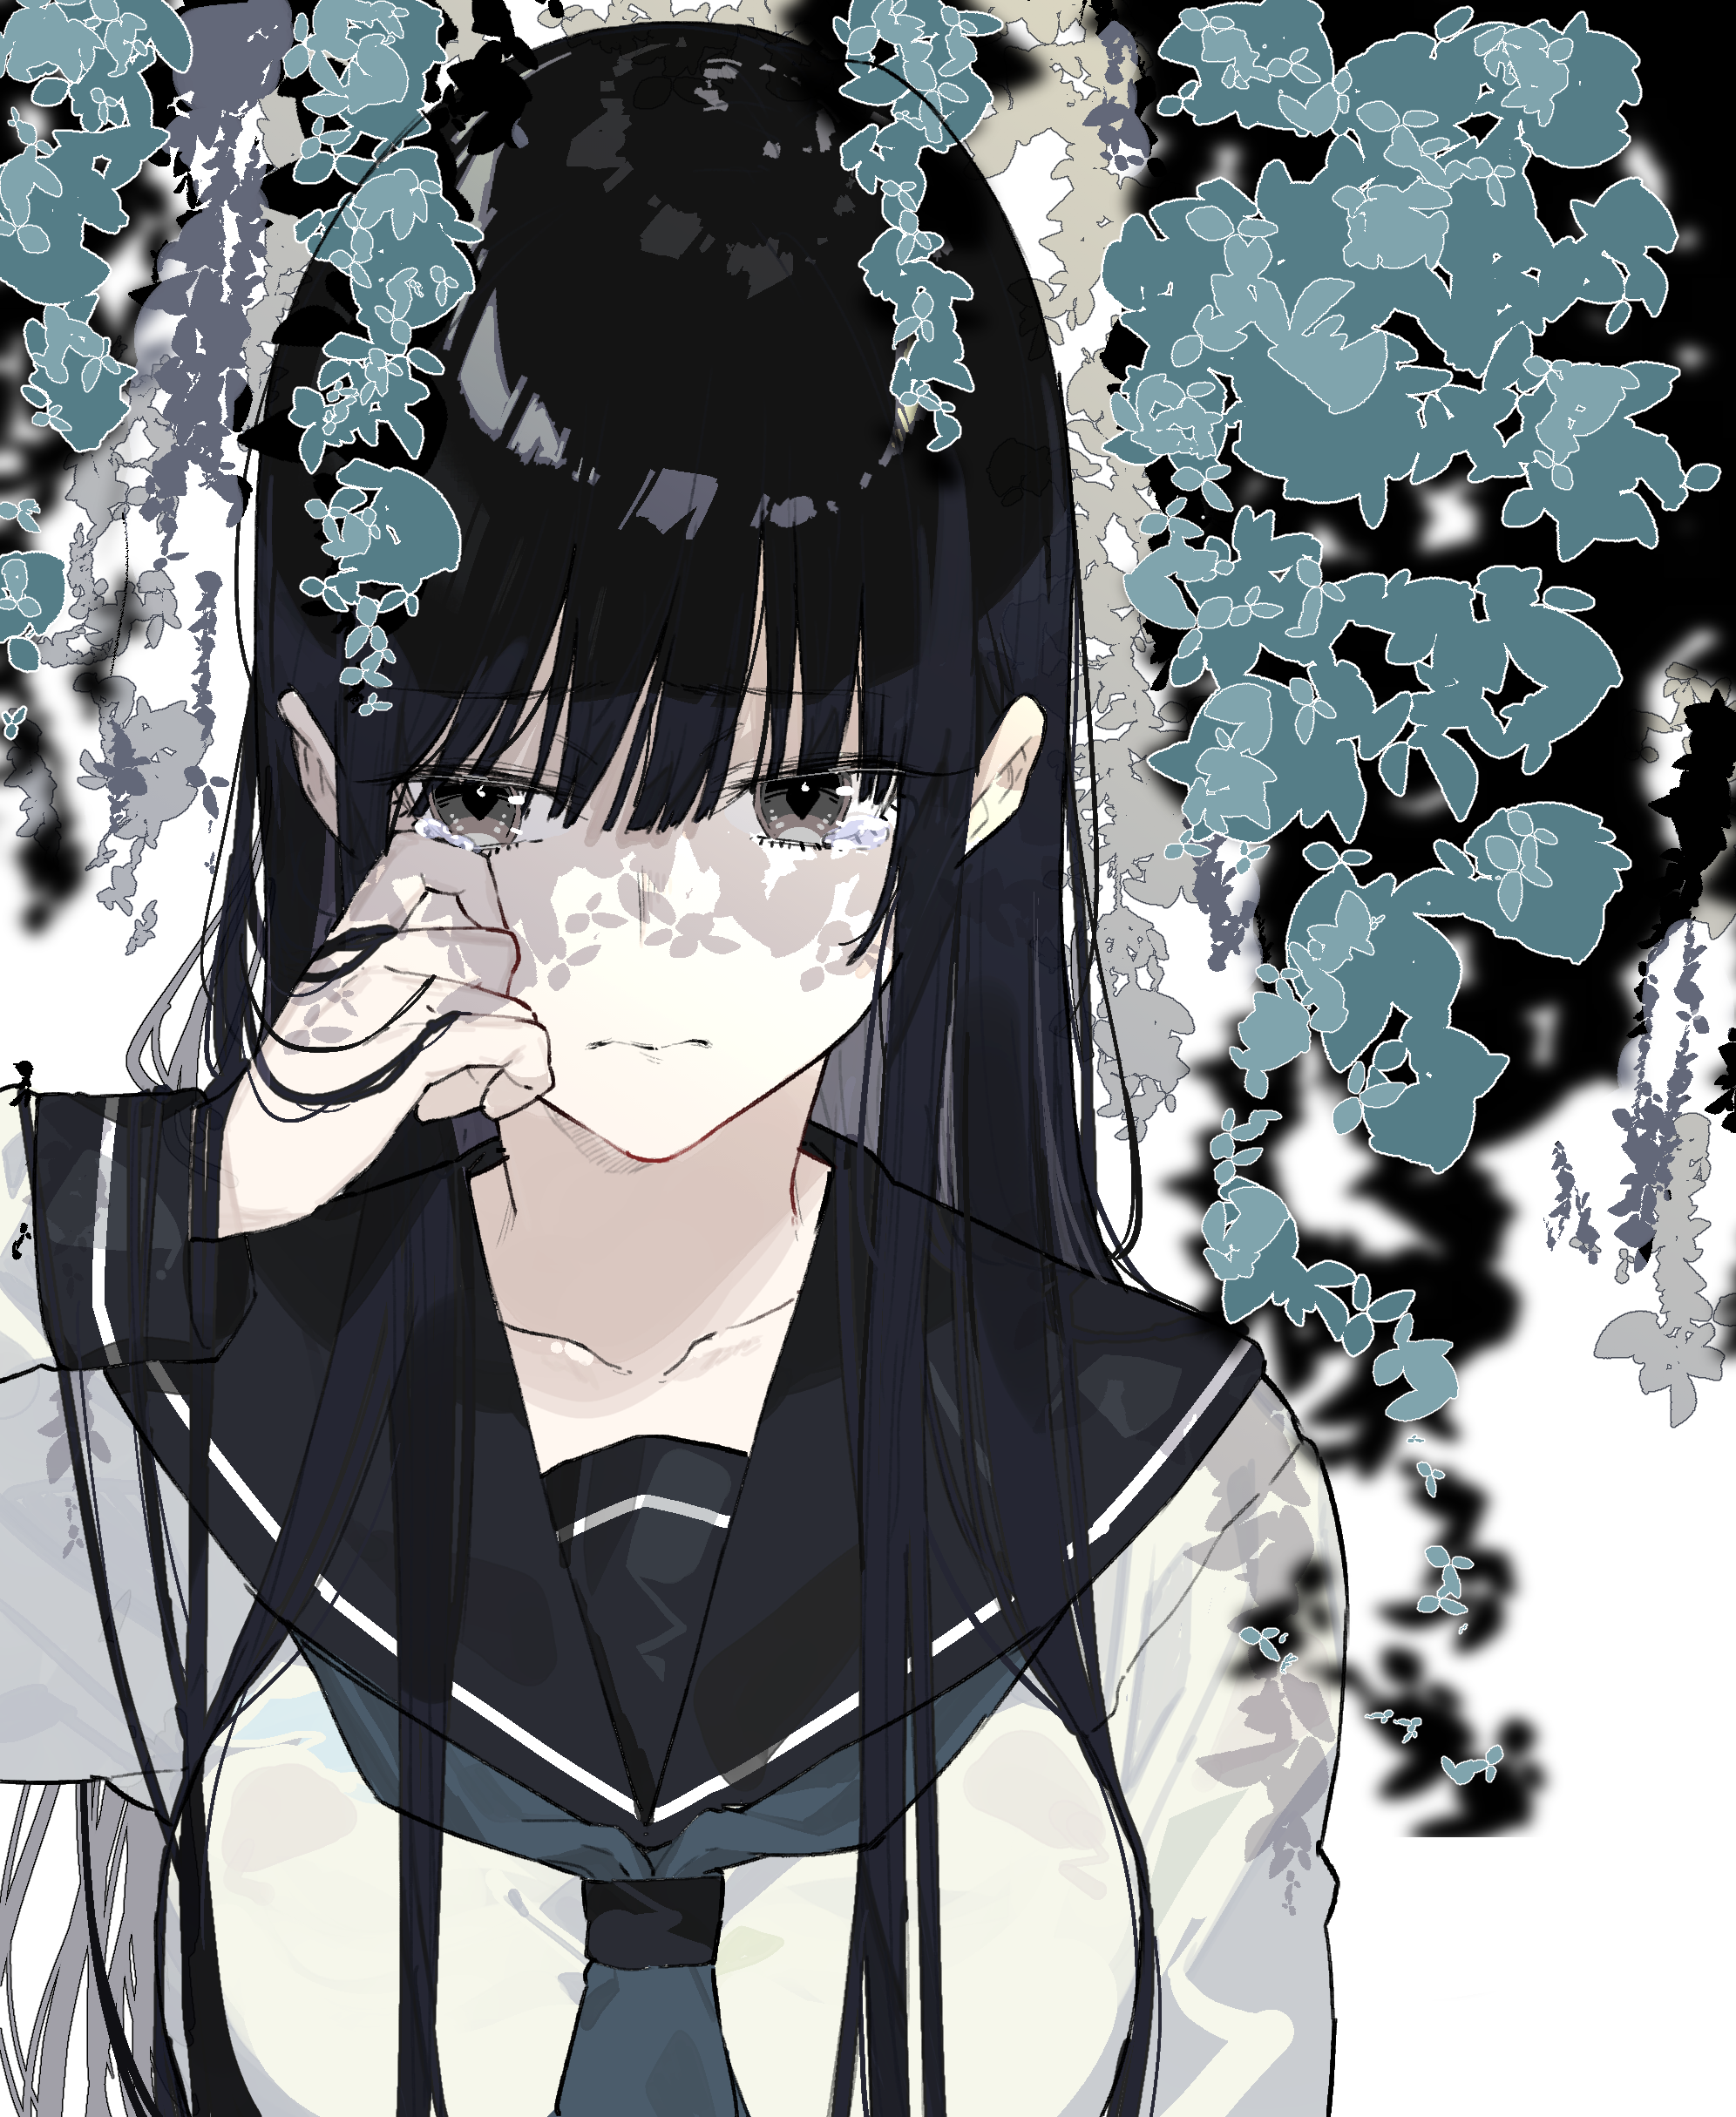 Anime #Sankarea Rea Sanka #720P #wallpaper #hdwallpaper #desktop | Anime,  Wallpaper, Hd wallpaper